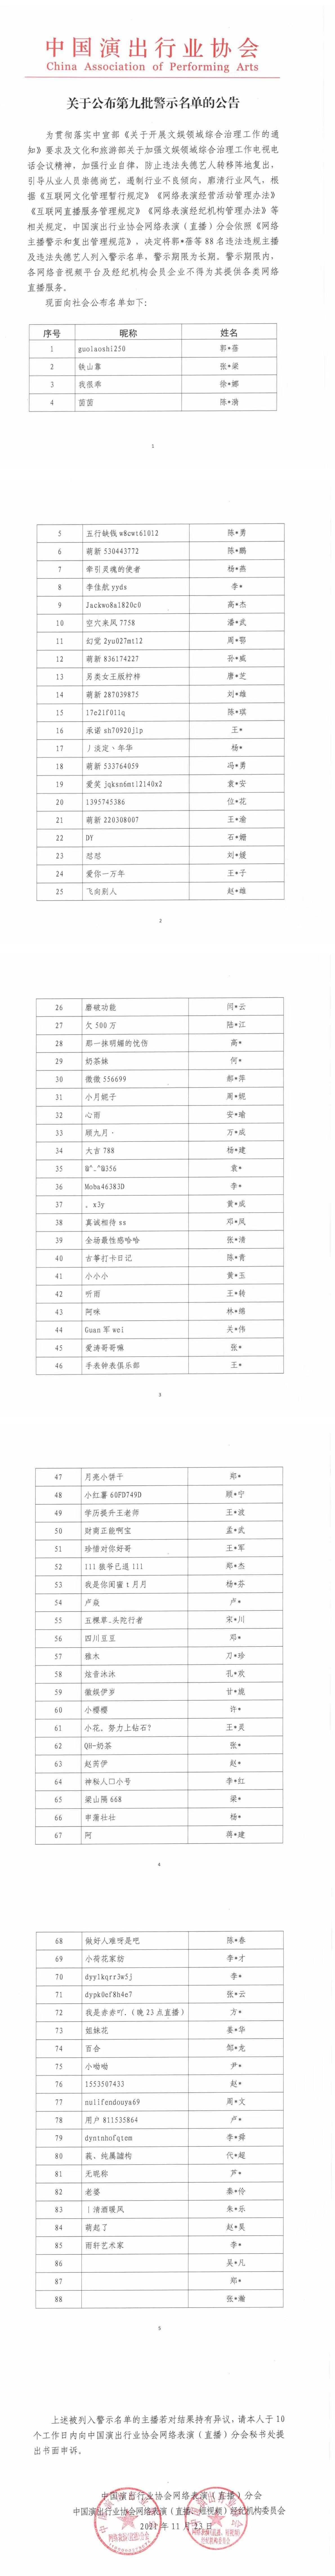 中演协公布第九批网络主播警示名单 首次纳入违法失德艺人